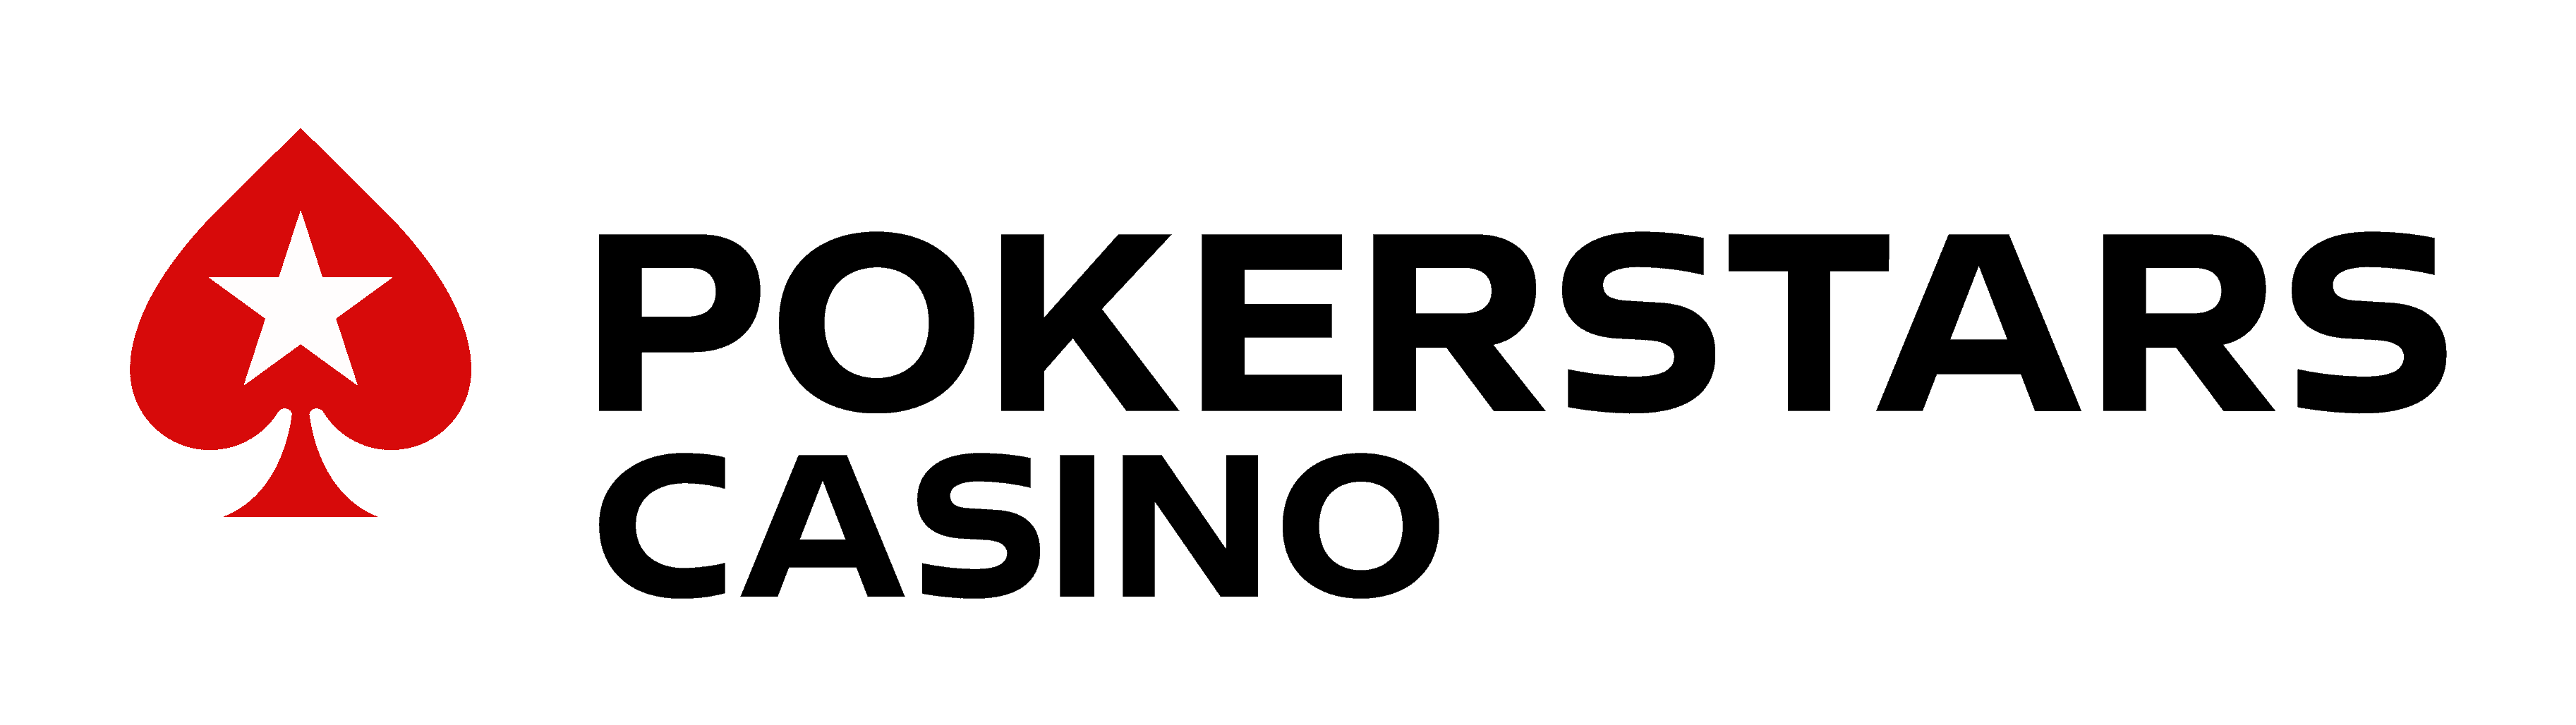 Pokersars logo Casino